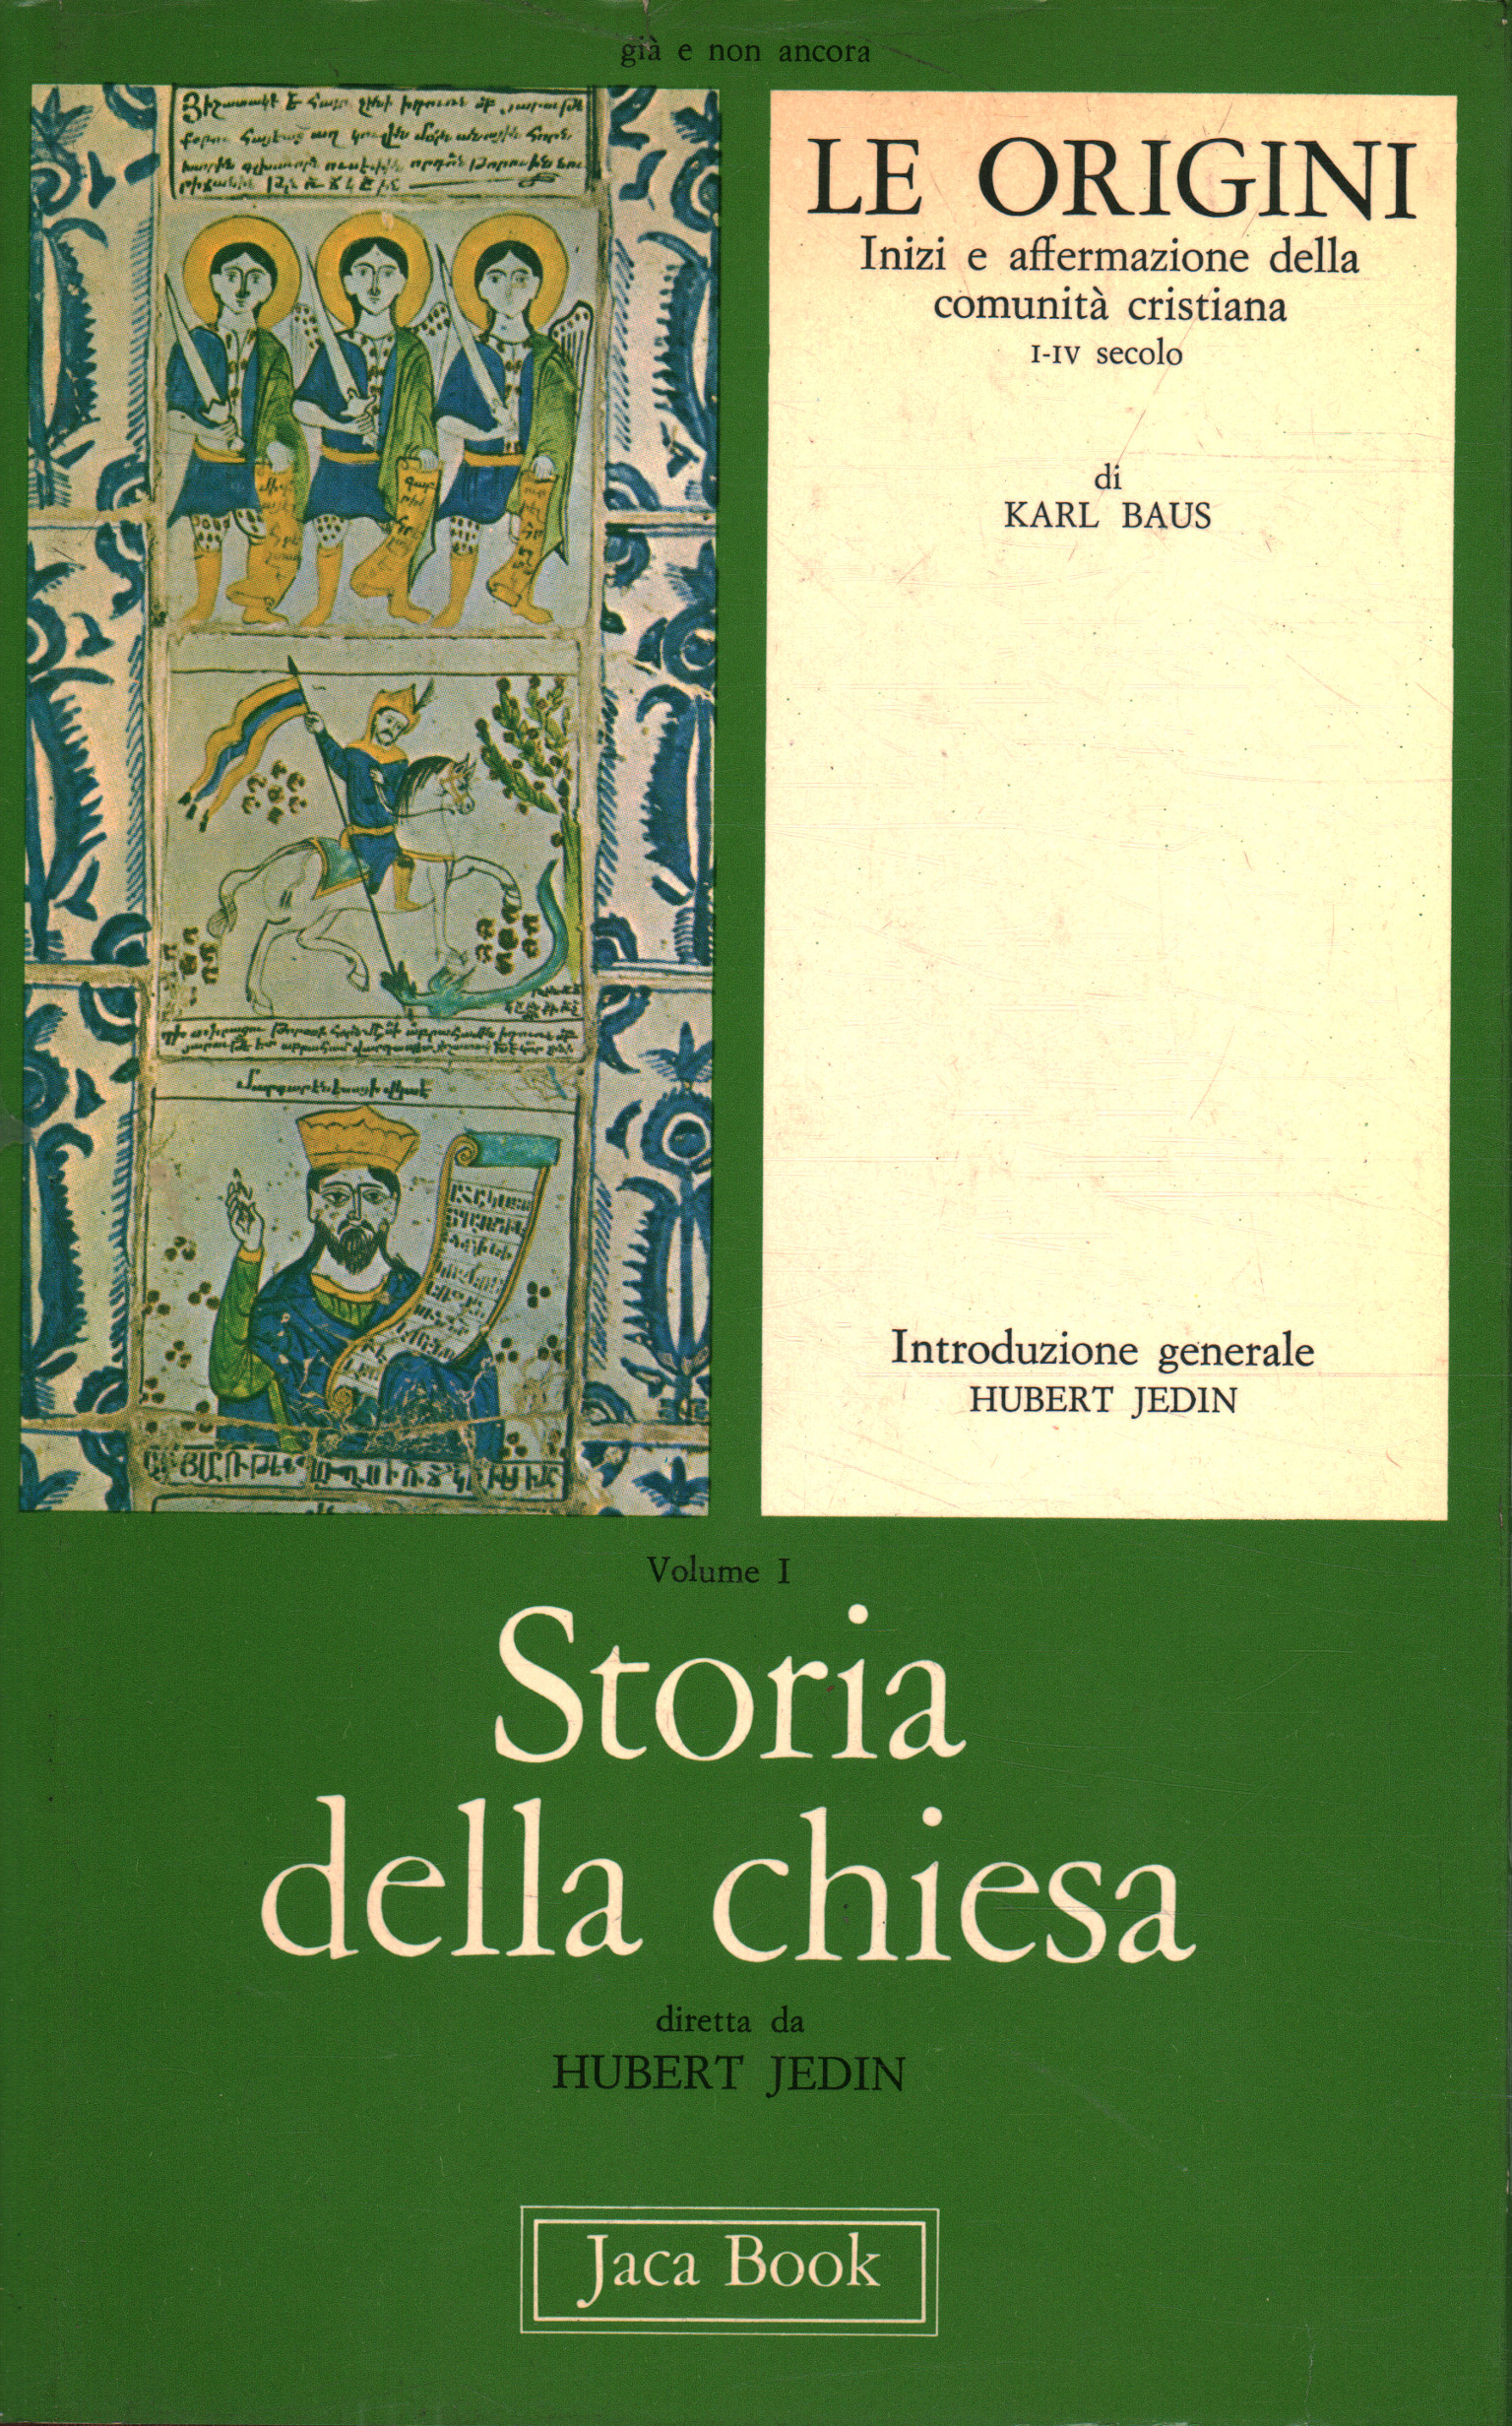 Historia de la iglesia. Los orígenes (Volumen I), Karl Baus, utilizó